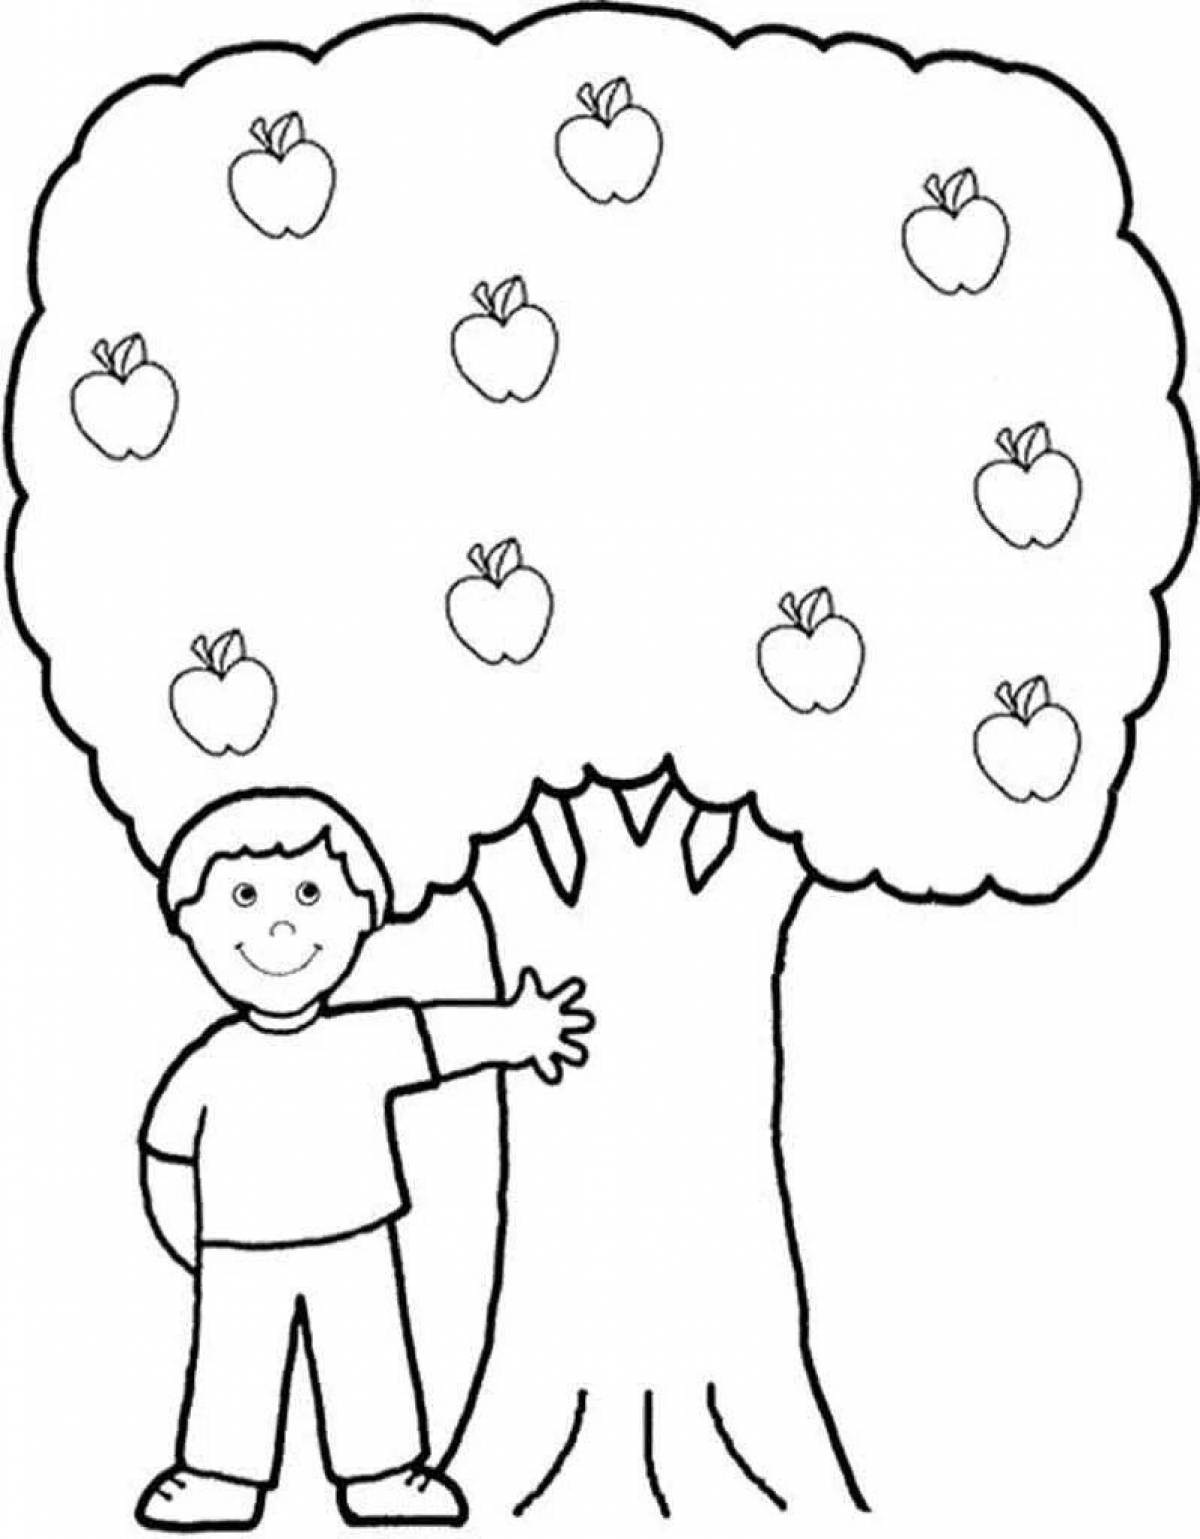 Юмористическая раскраска apple tree для детей